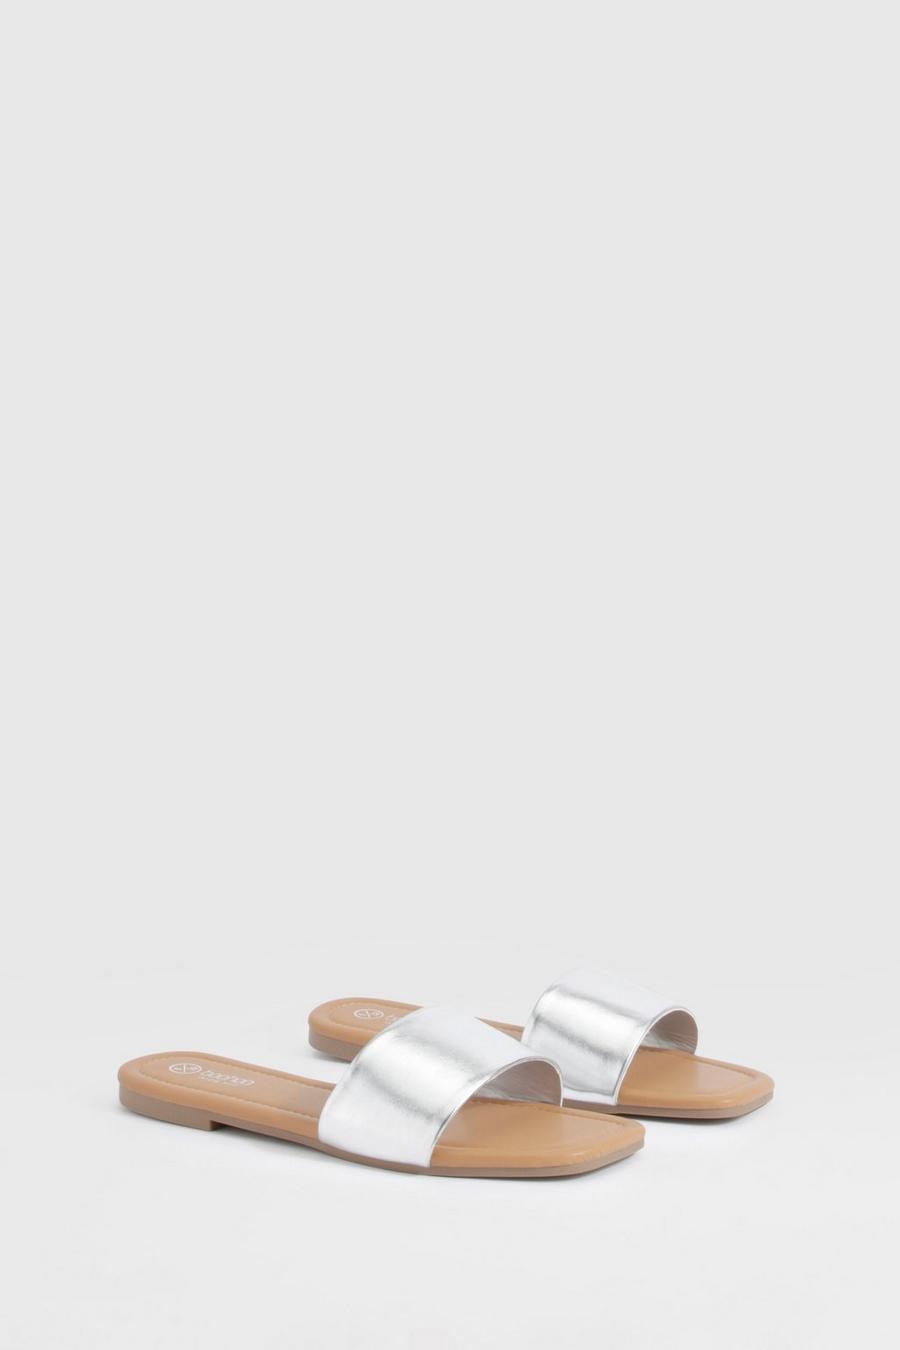 Sandalias mule de holgura ancha minimalistas metálicas, Silver